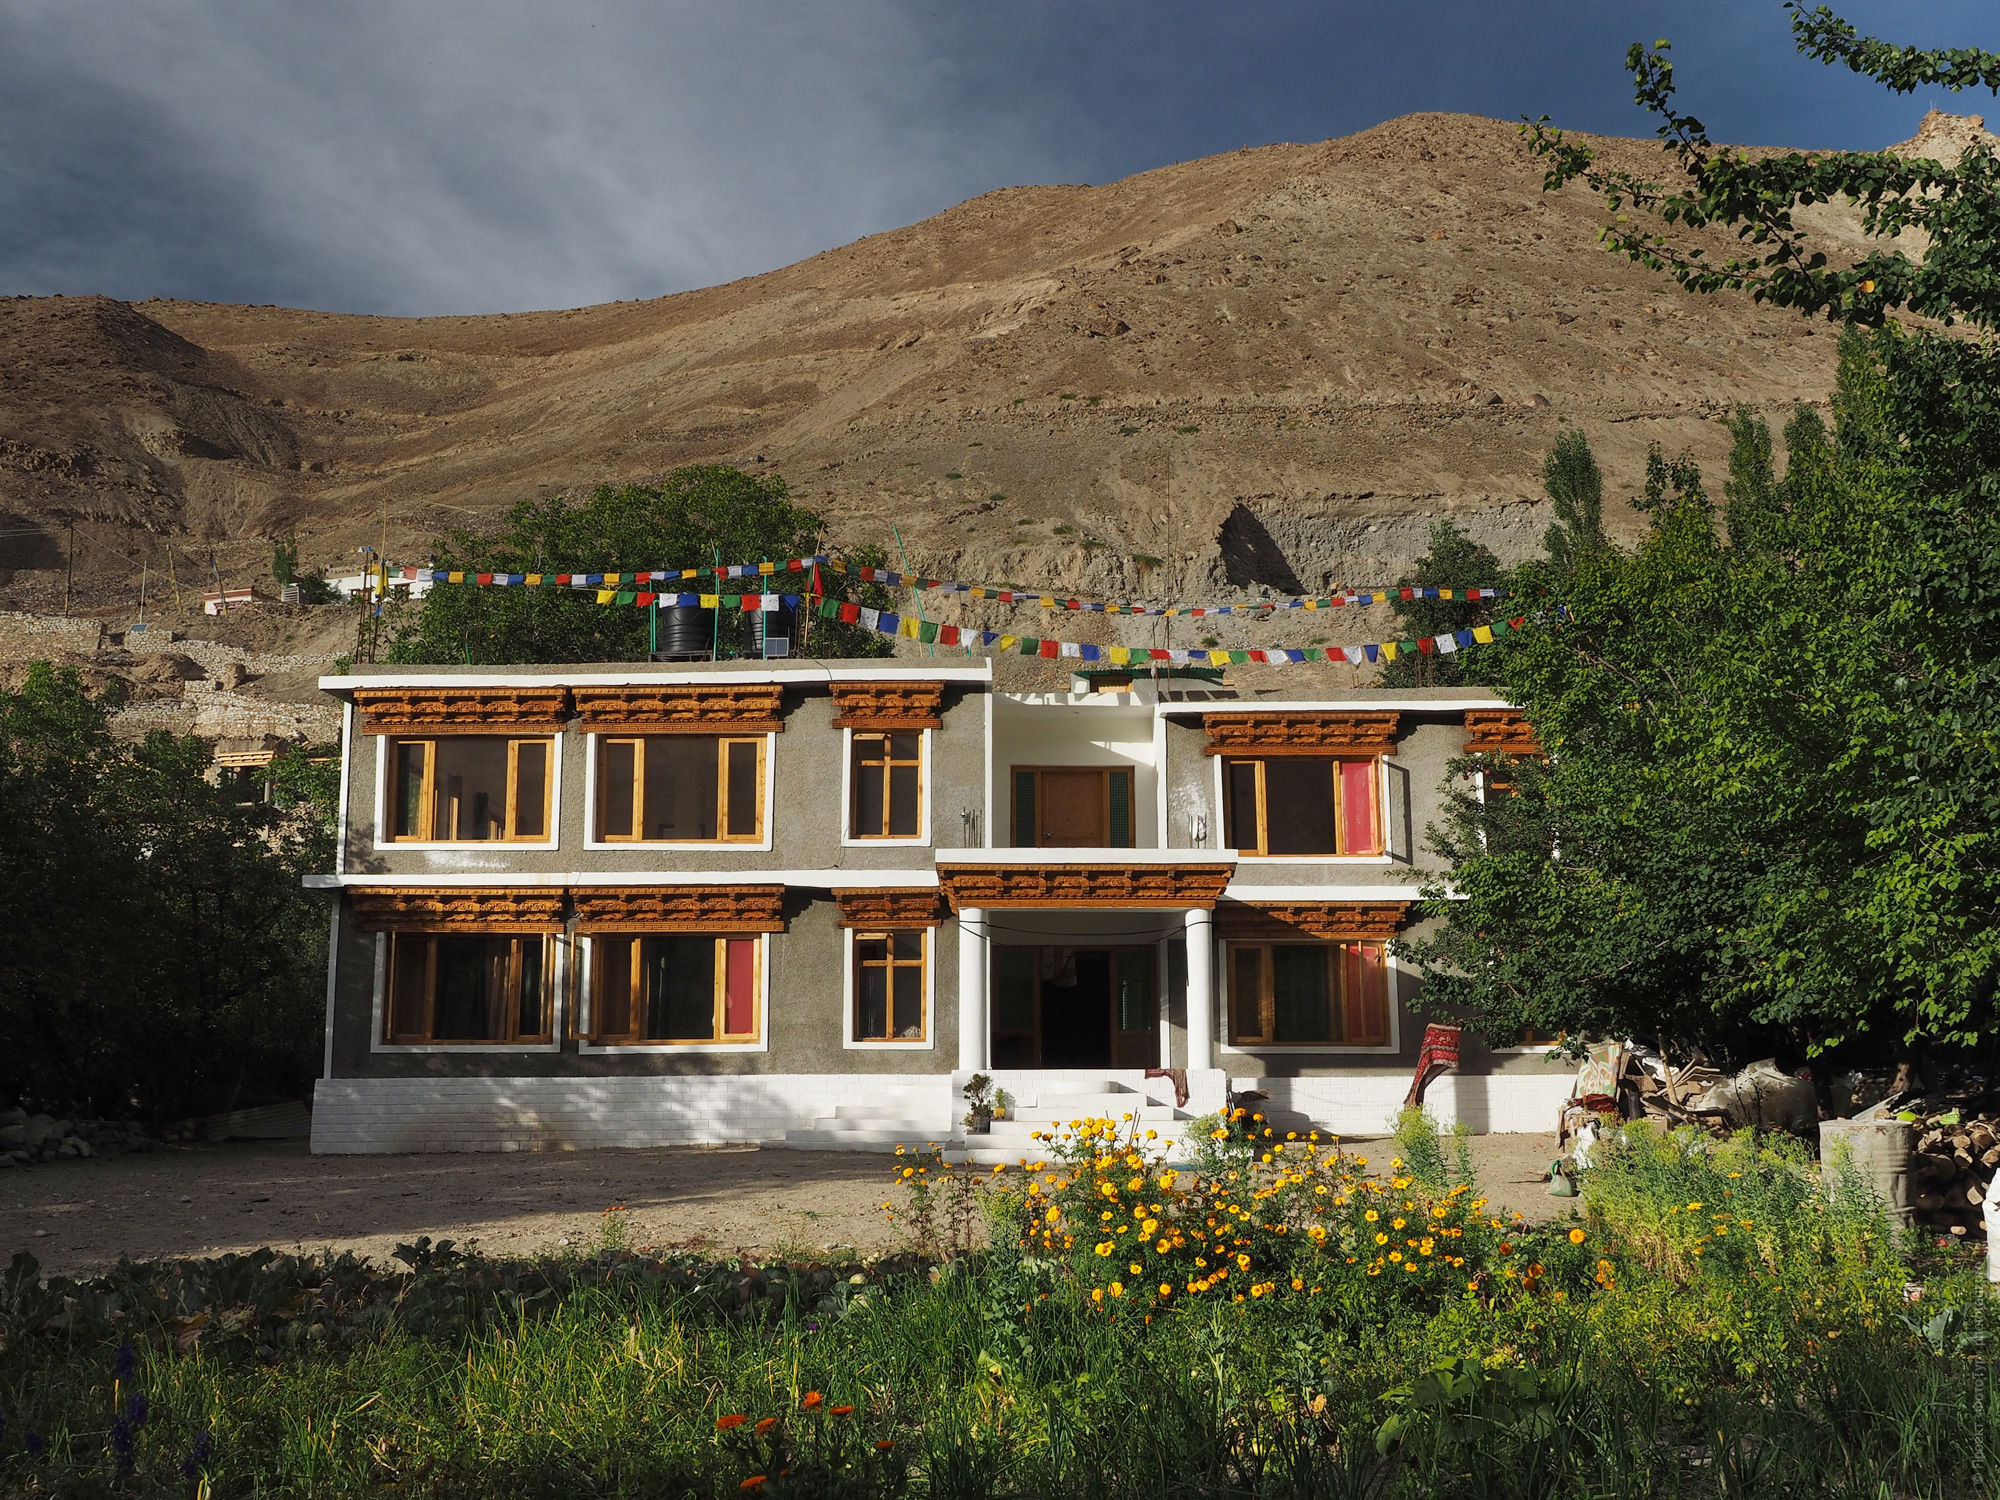 Hotel in the village of Donkar, Ladakh women's tour, August 31 - September 14, 2019.